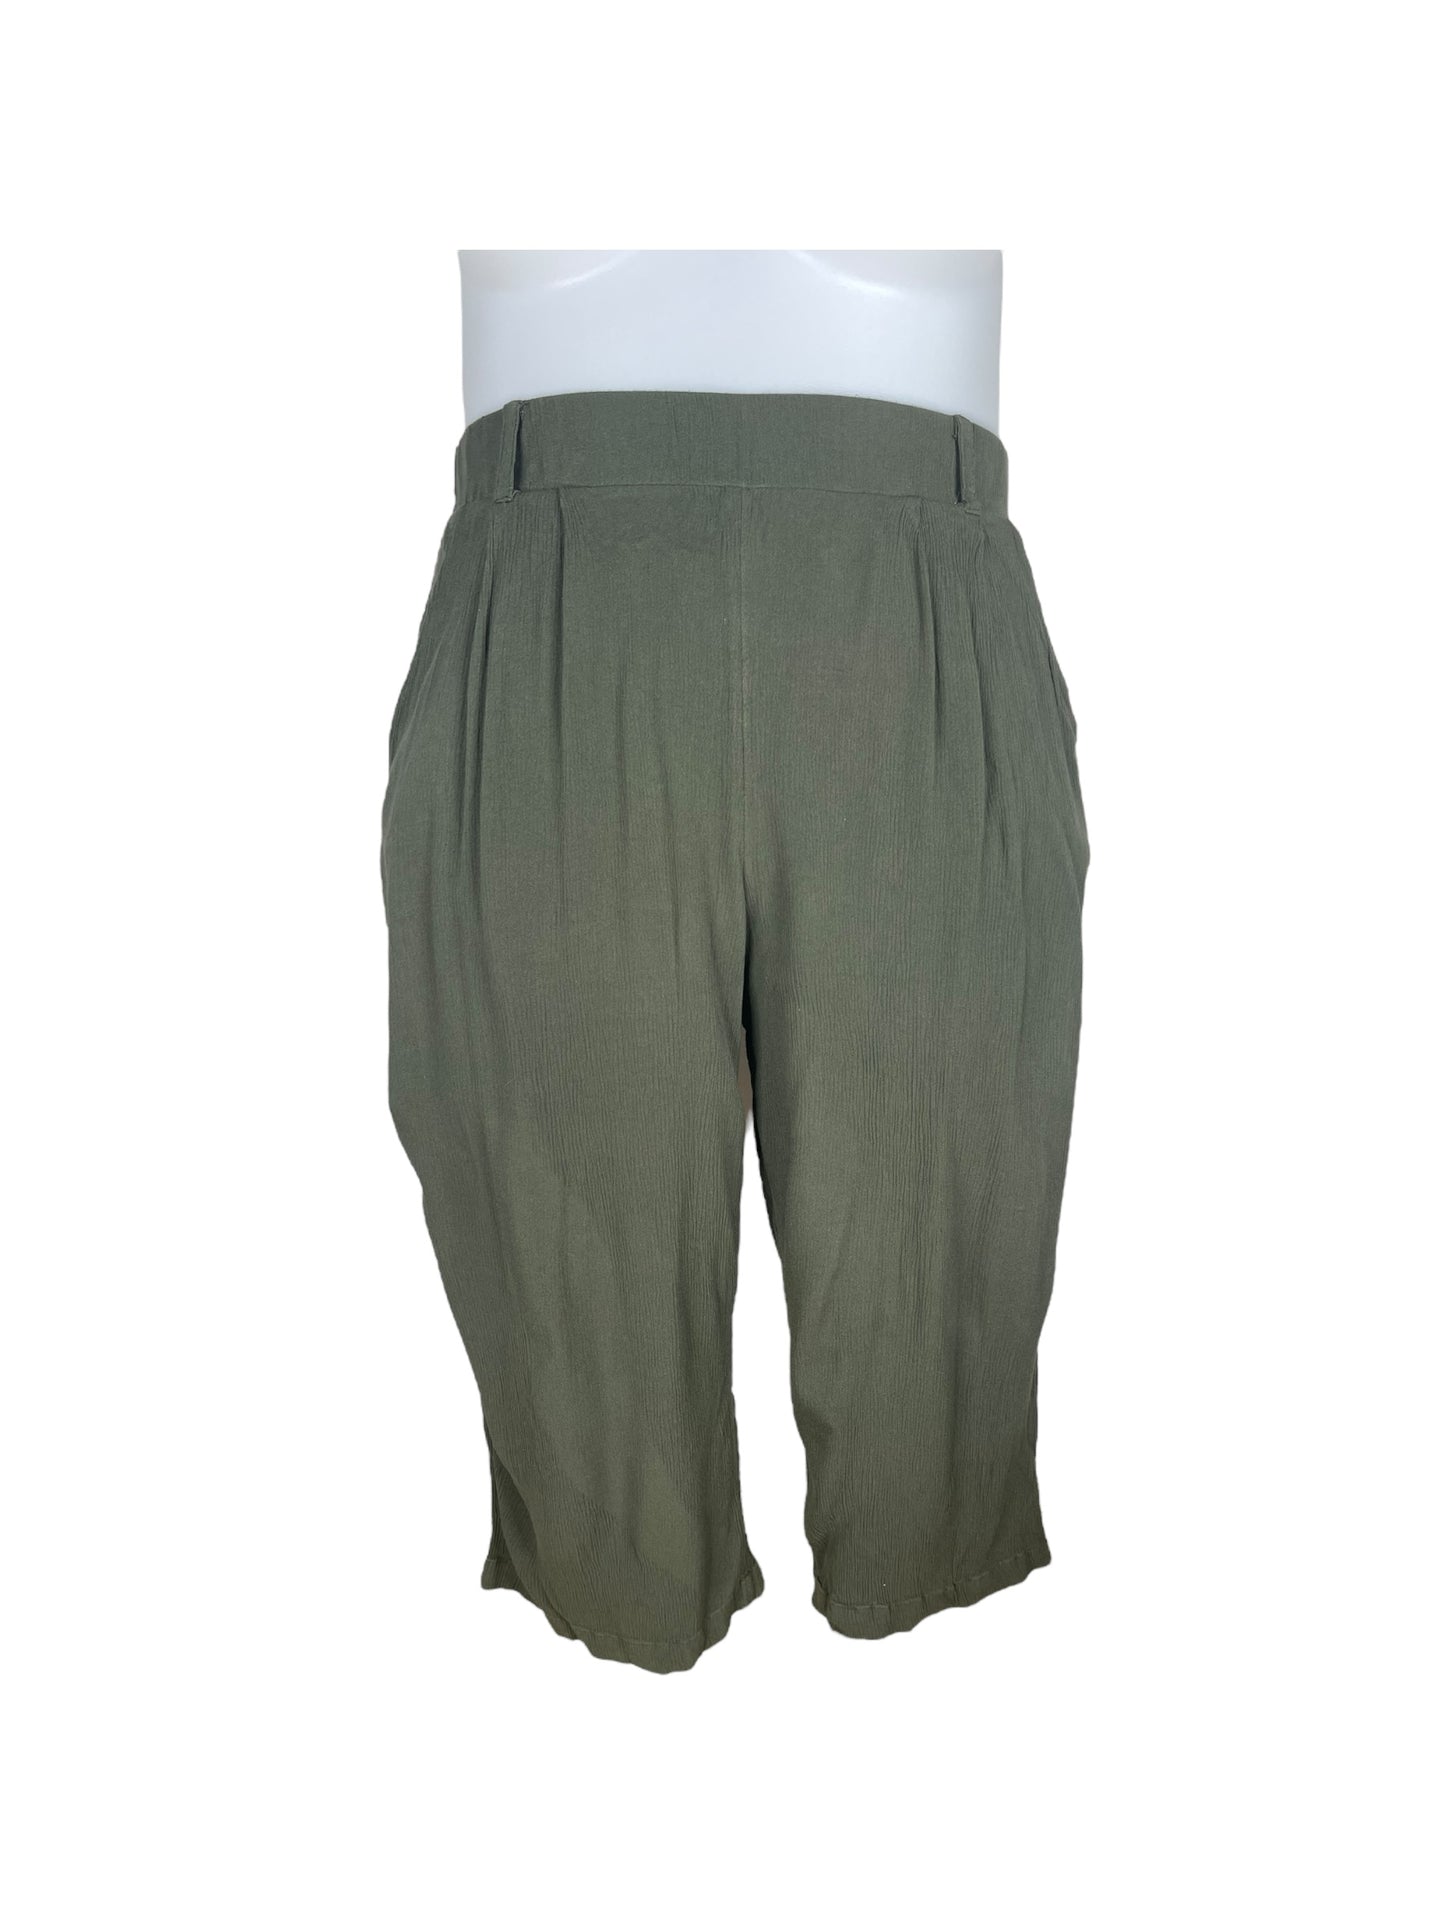 Dark Green Capri Pants (2)